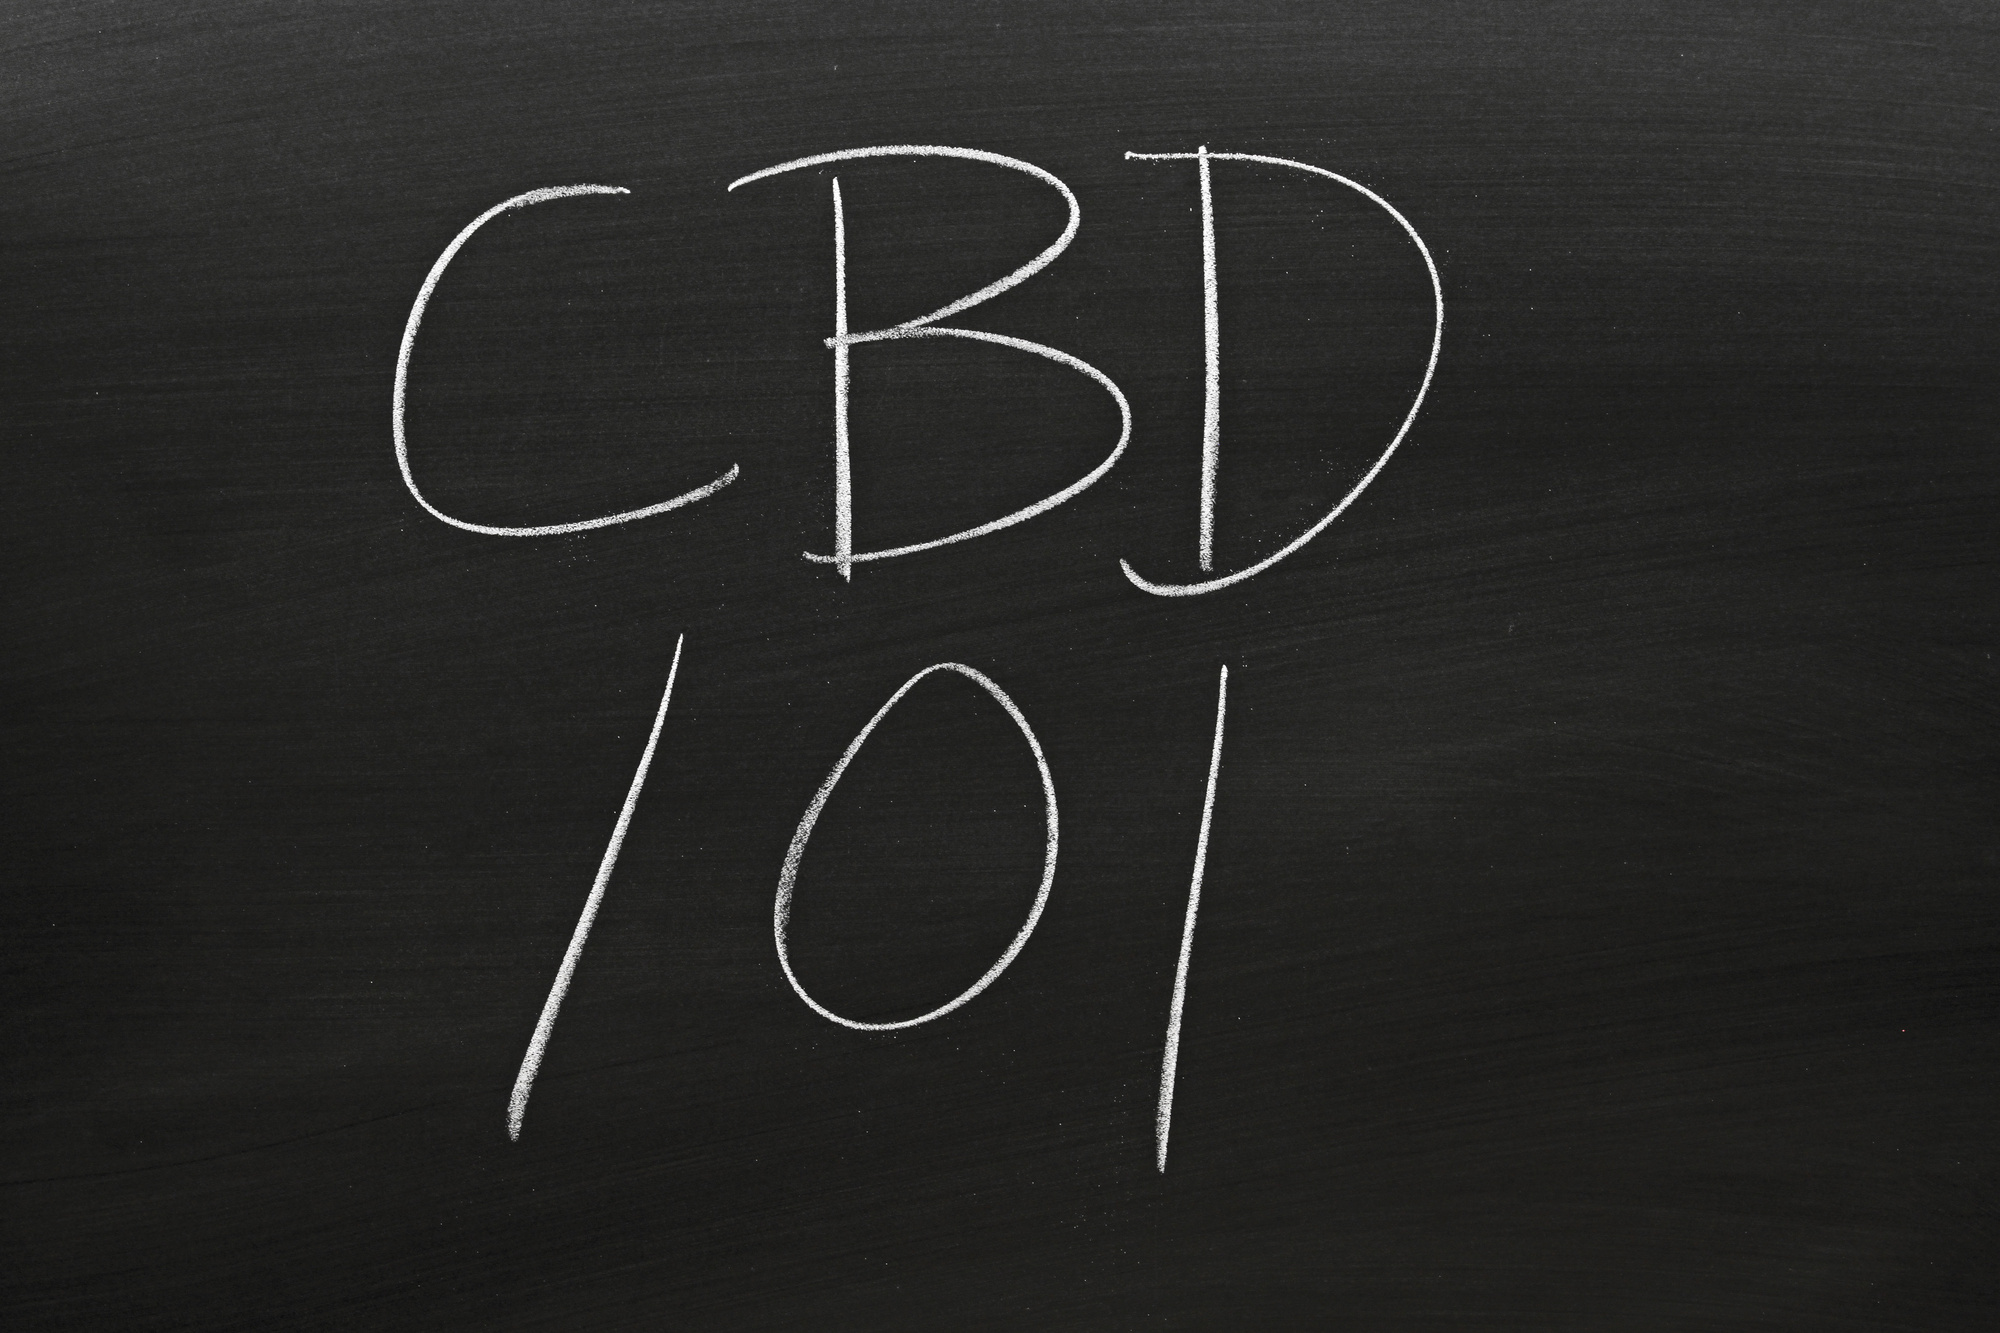 The words "CBD 101" on a blackboard in chalk